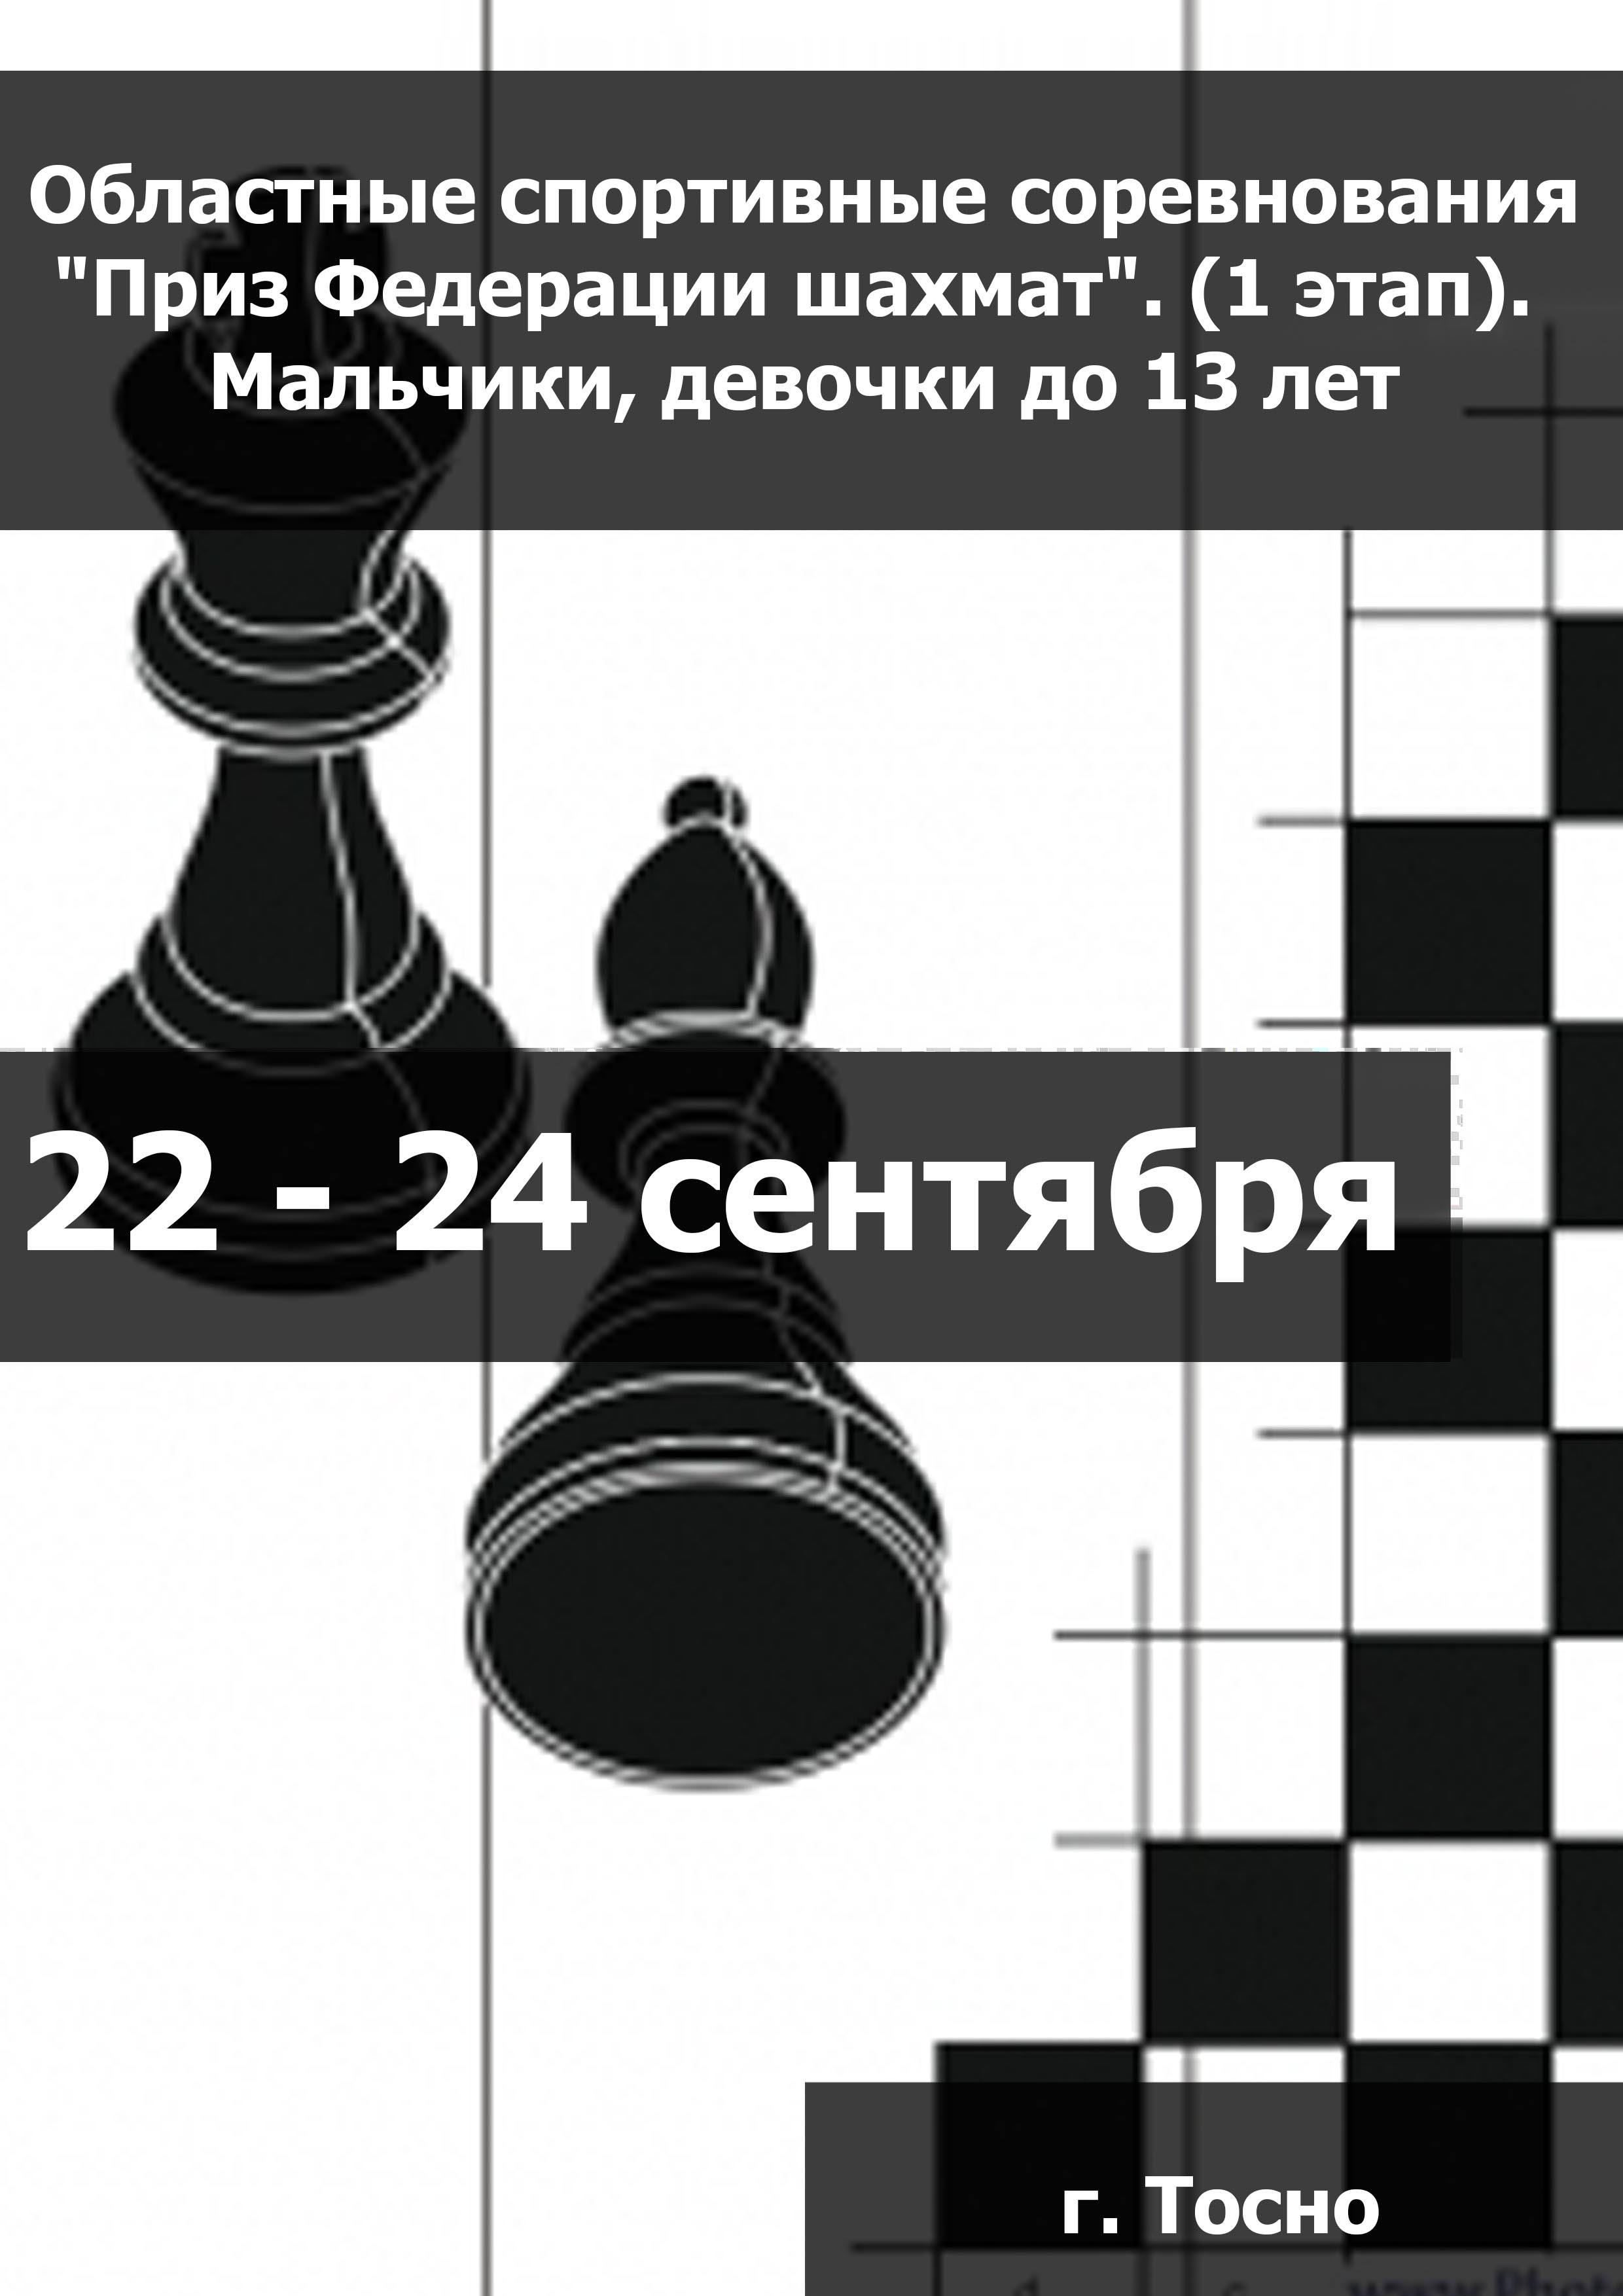 Областные спортивные соревнования "Приз Федерации шахмат". (1 этап).  Мальчики, девочки до 13 лет  22  月
 2023  年
 